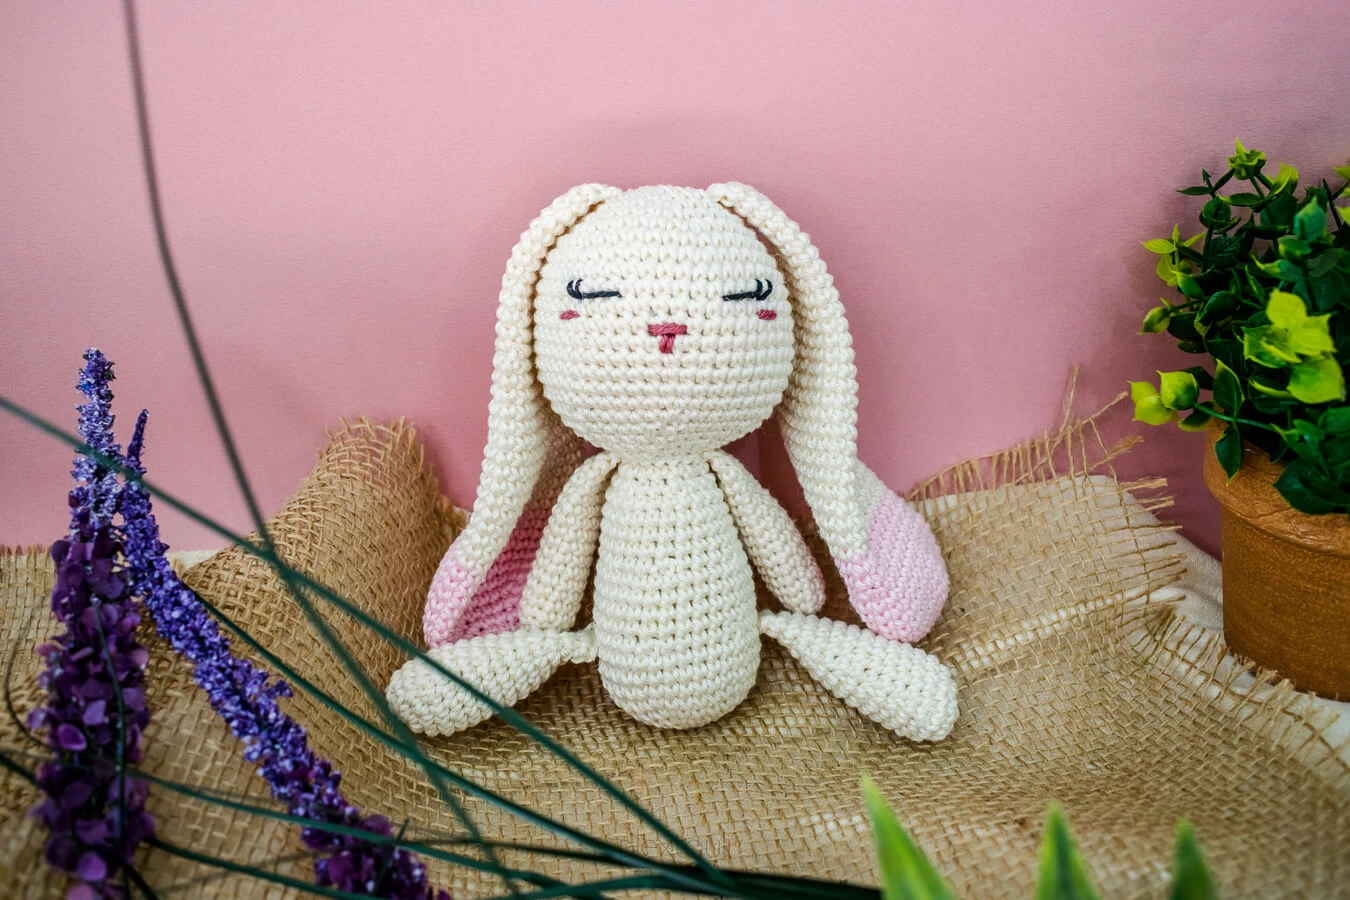 Cuddle doll "Bunny"